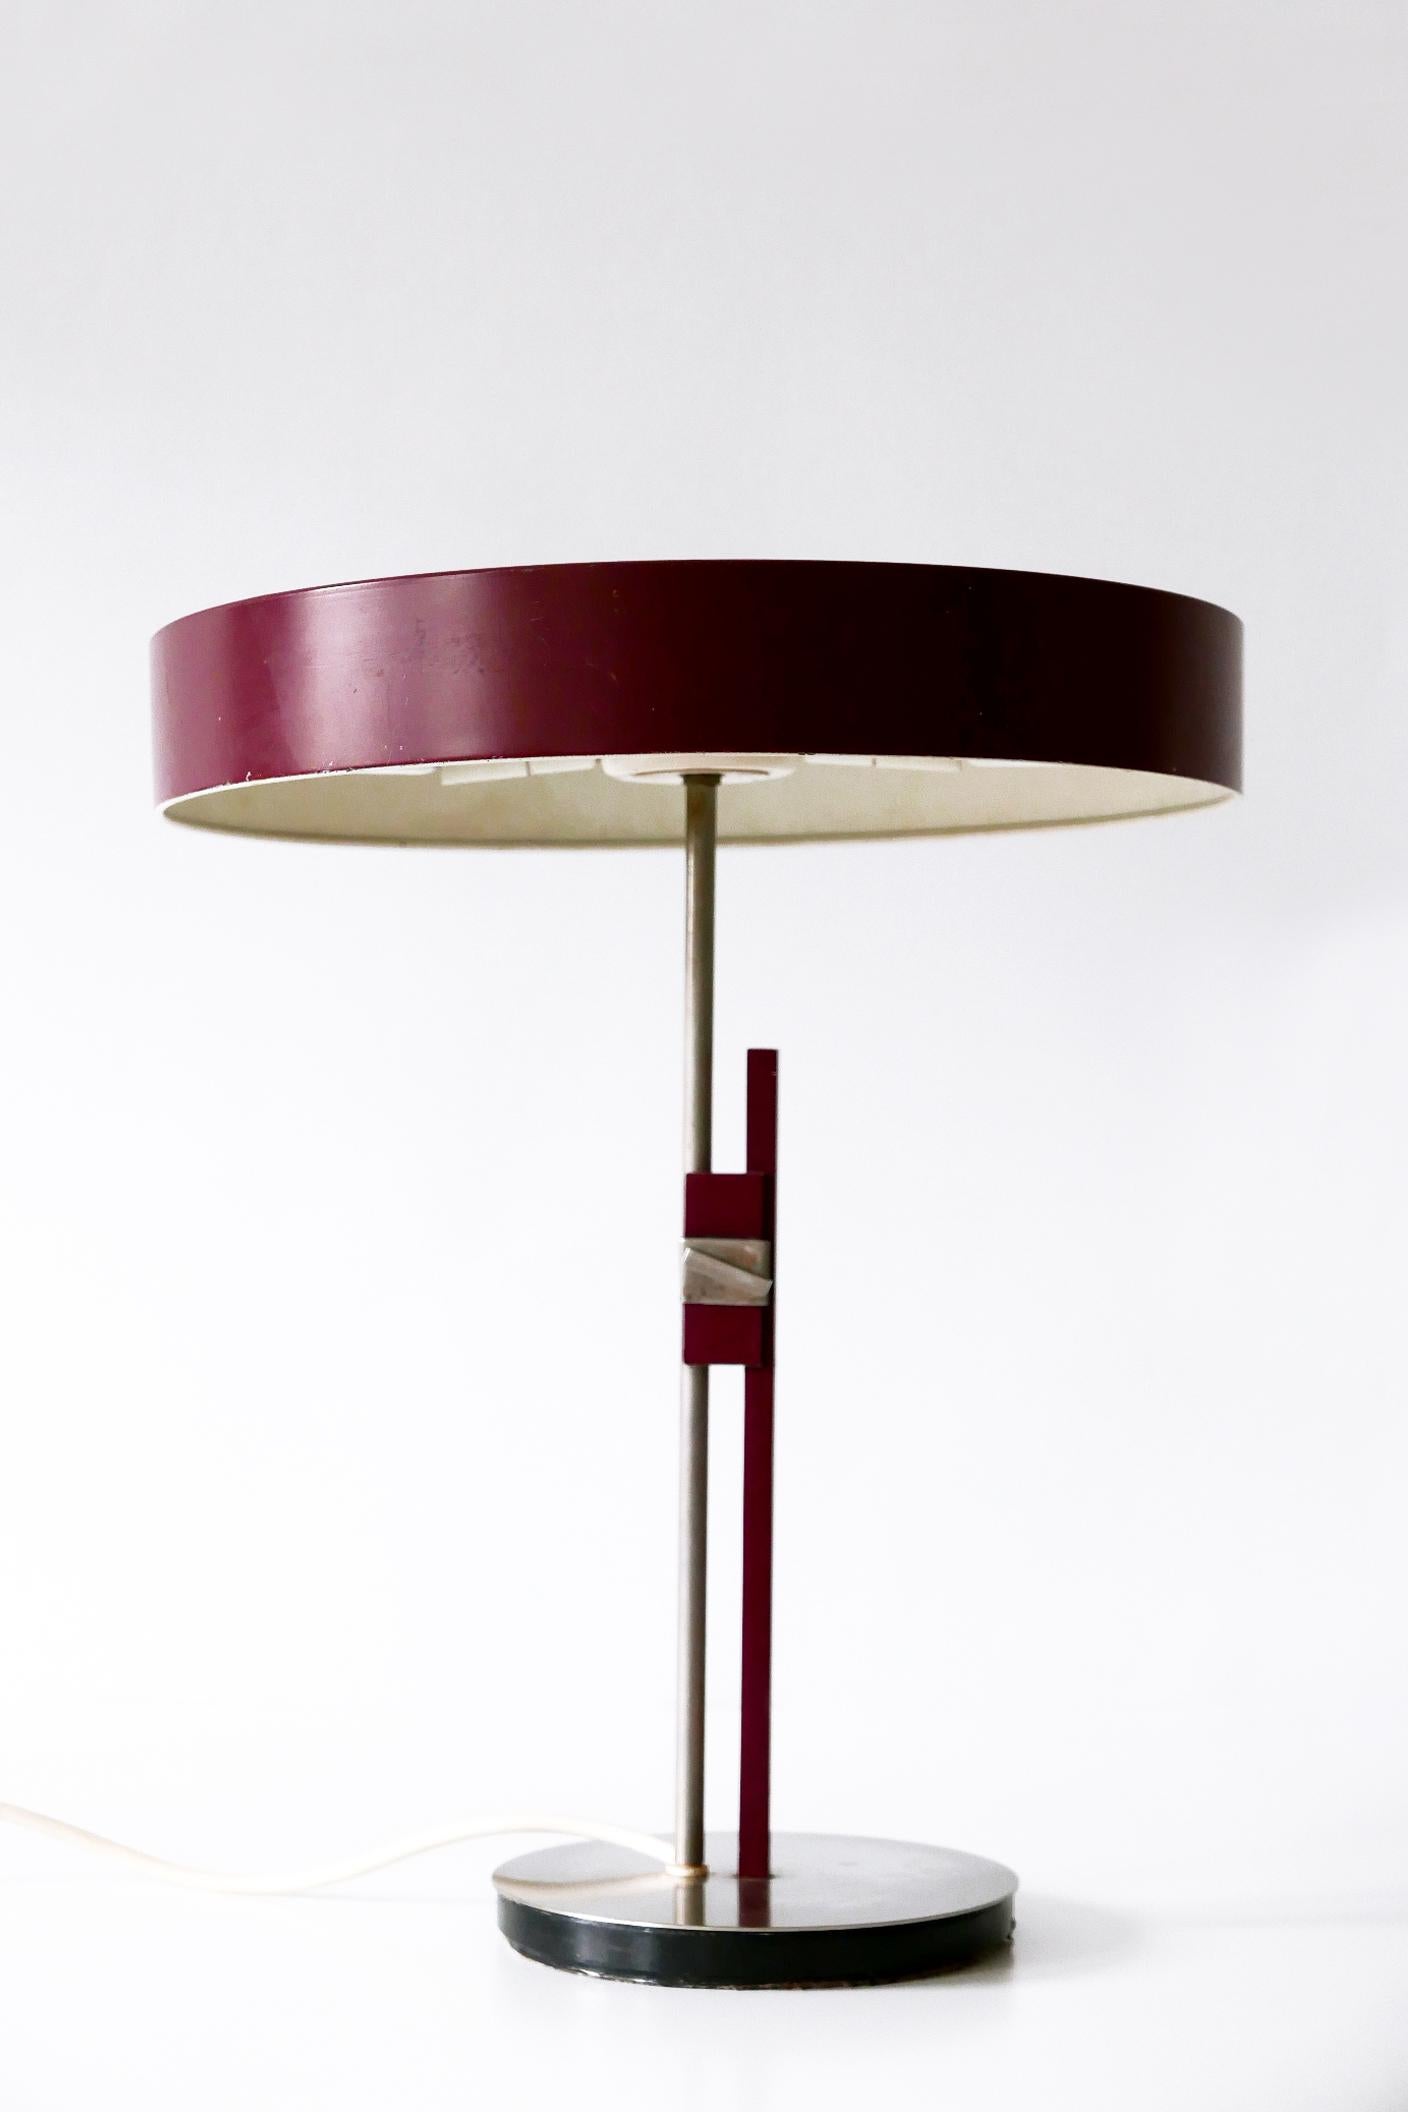 Luxury Mid-Century Modern President Table Lamp by Kaiser Leuchten 1960s Germany 3